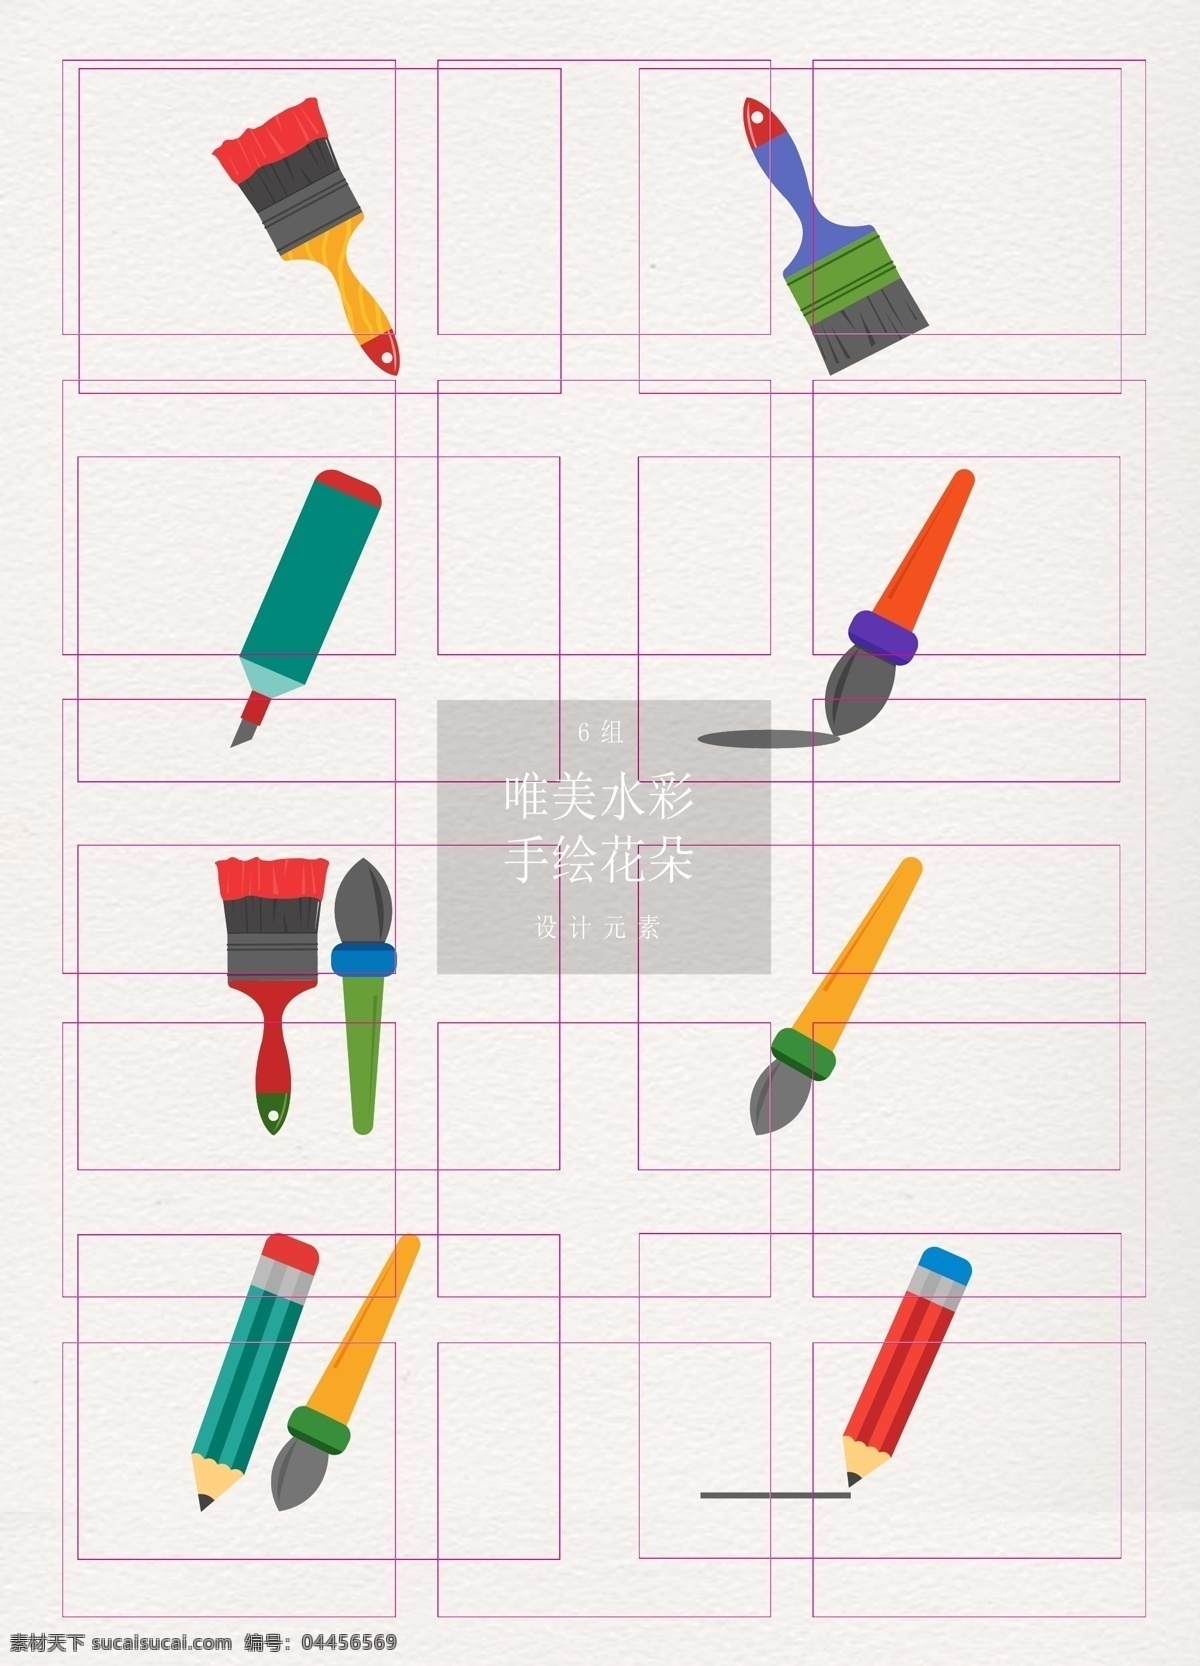 艺术 工作 工具 矢量 卡通 矢量图 毛笔 彩色 设计工具 刷子 铅笔